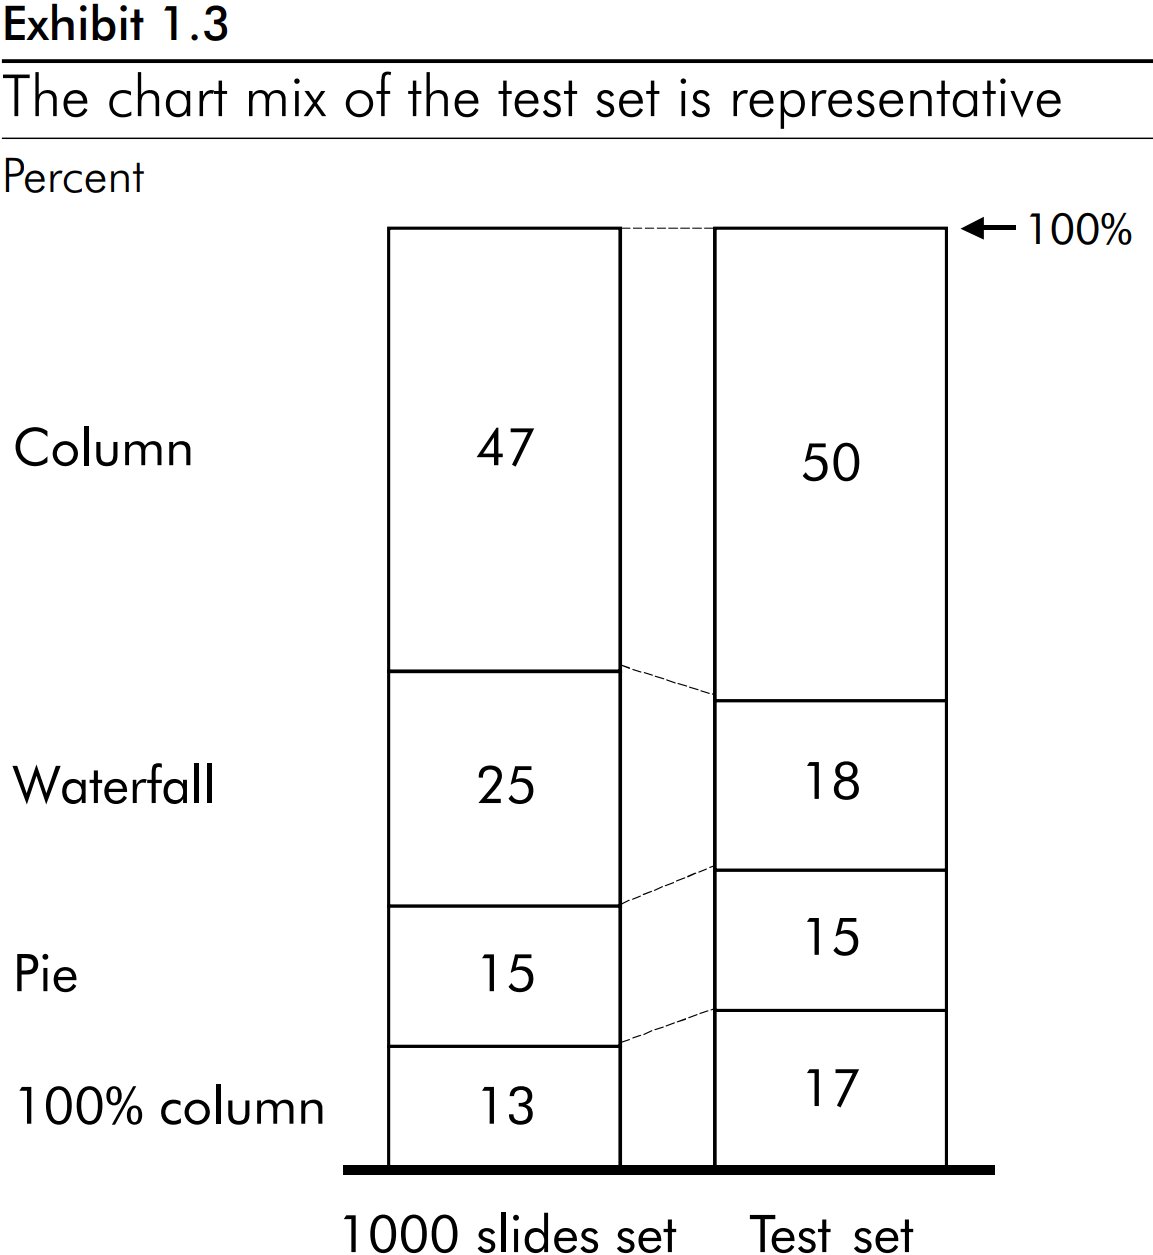 테스트 세트의 차트 혼합이 대표적임을 보여주는 누적 세로 막대형 차트.